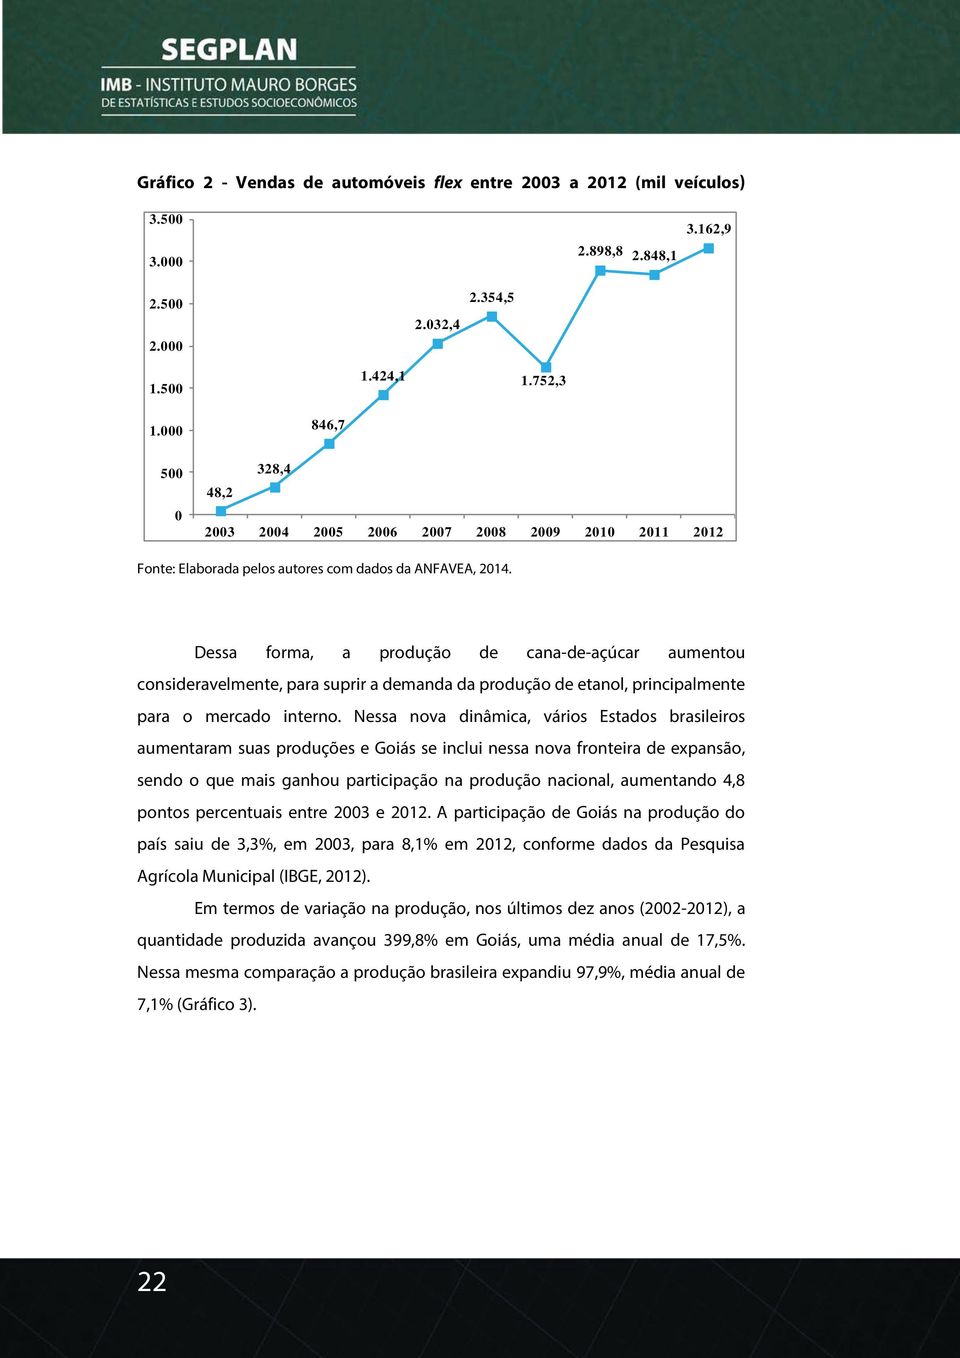 Dessa forma, a produção de cana-de-açúcar aumentou consideravelmente, para suprir a demanda da produção de etanol, principalmente para o mercado interno.